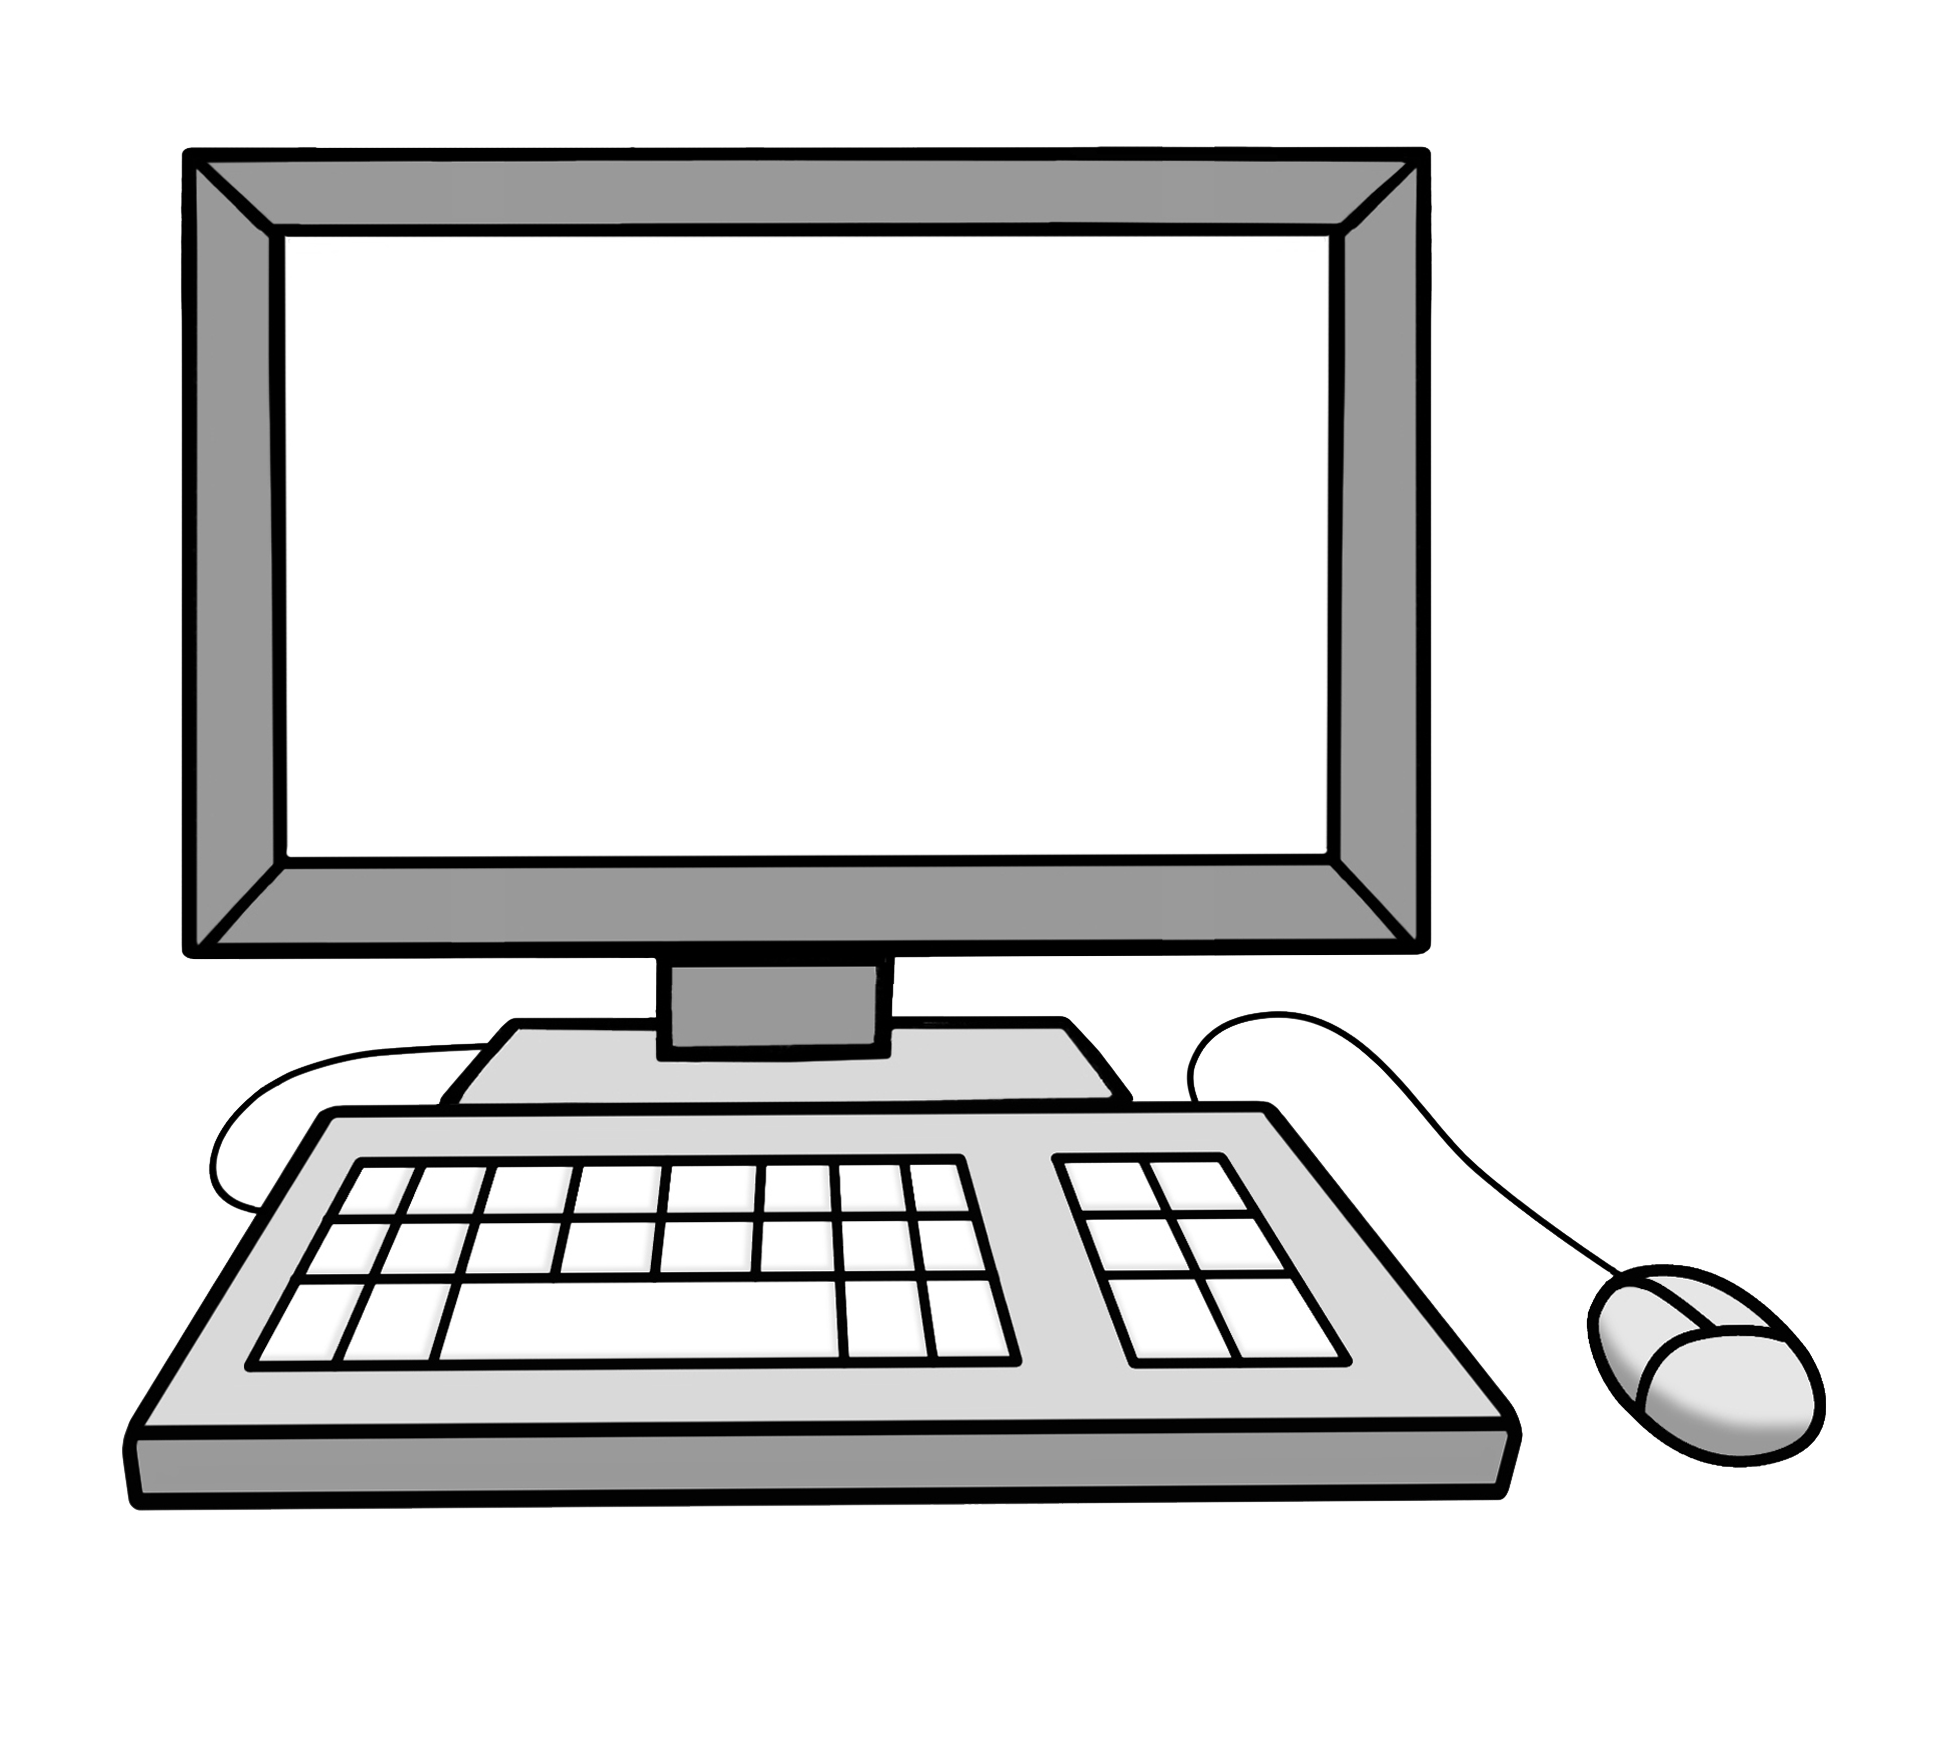 Das Bild zeigt einen Computer